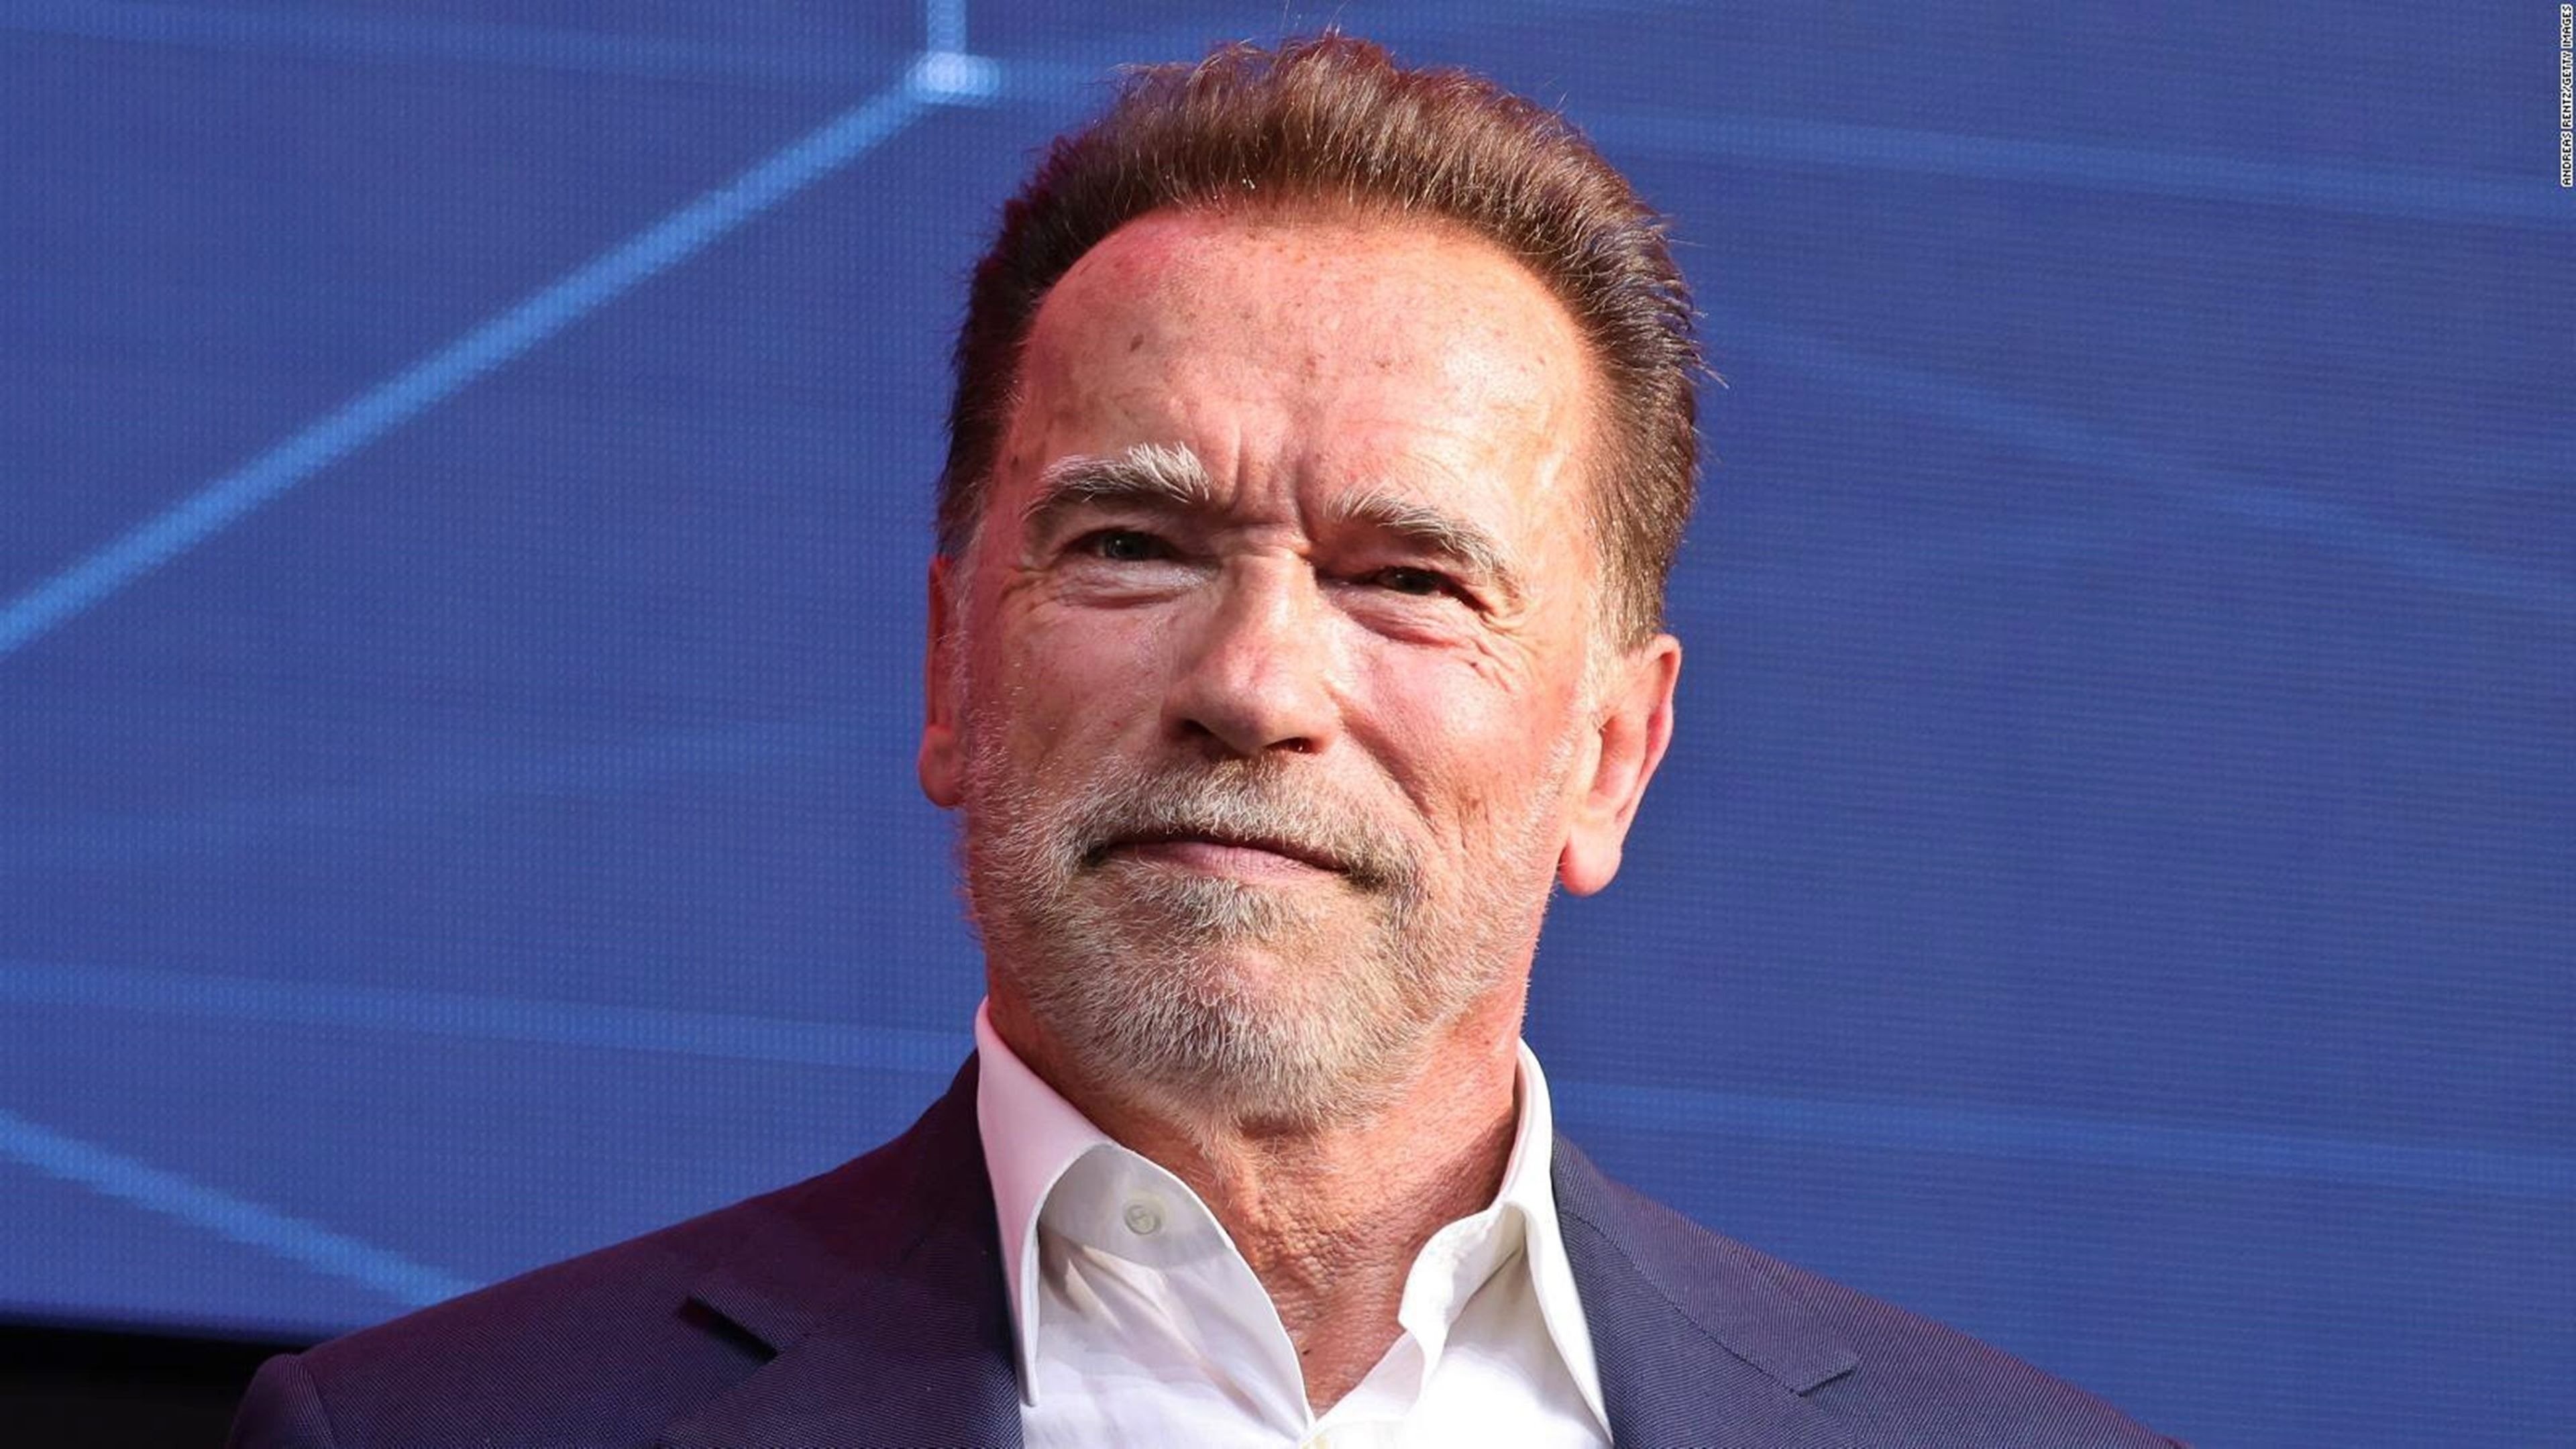 Conan va ser un malson per a Arnold Schwarzenegger, cap altre actor no ho hauria aguantat